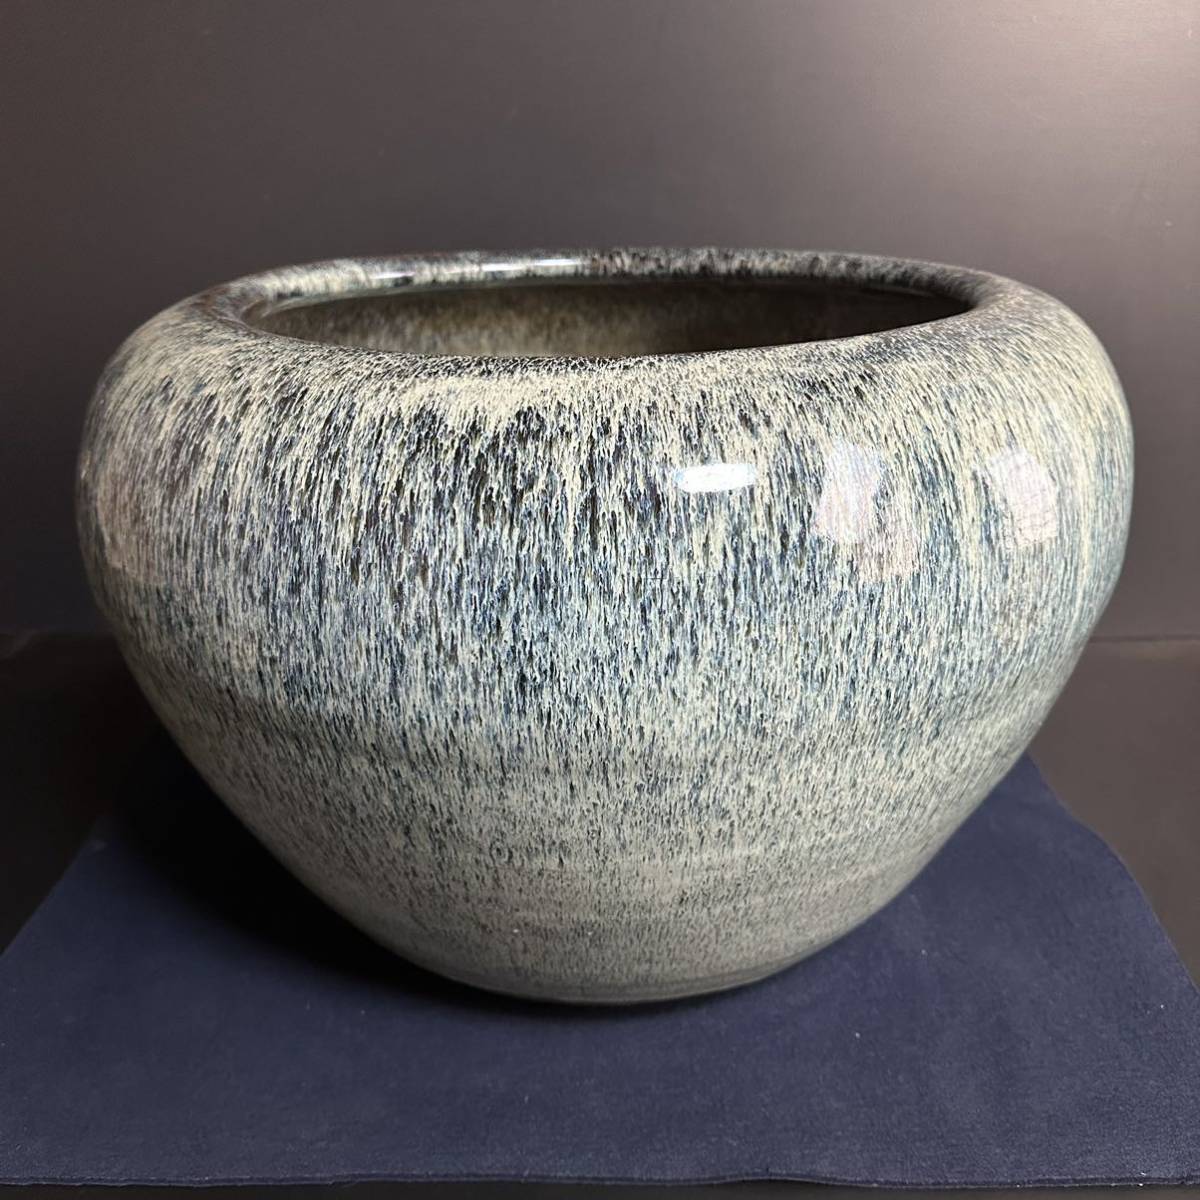 [KJ365] 大型 海鼠釉 火鉢 手炙り 瓶掛け 植木鉢 古民具 炭道具 美術陶器の画像1